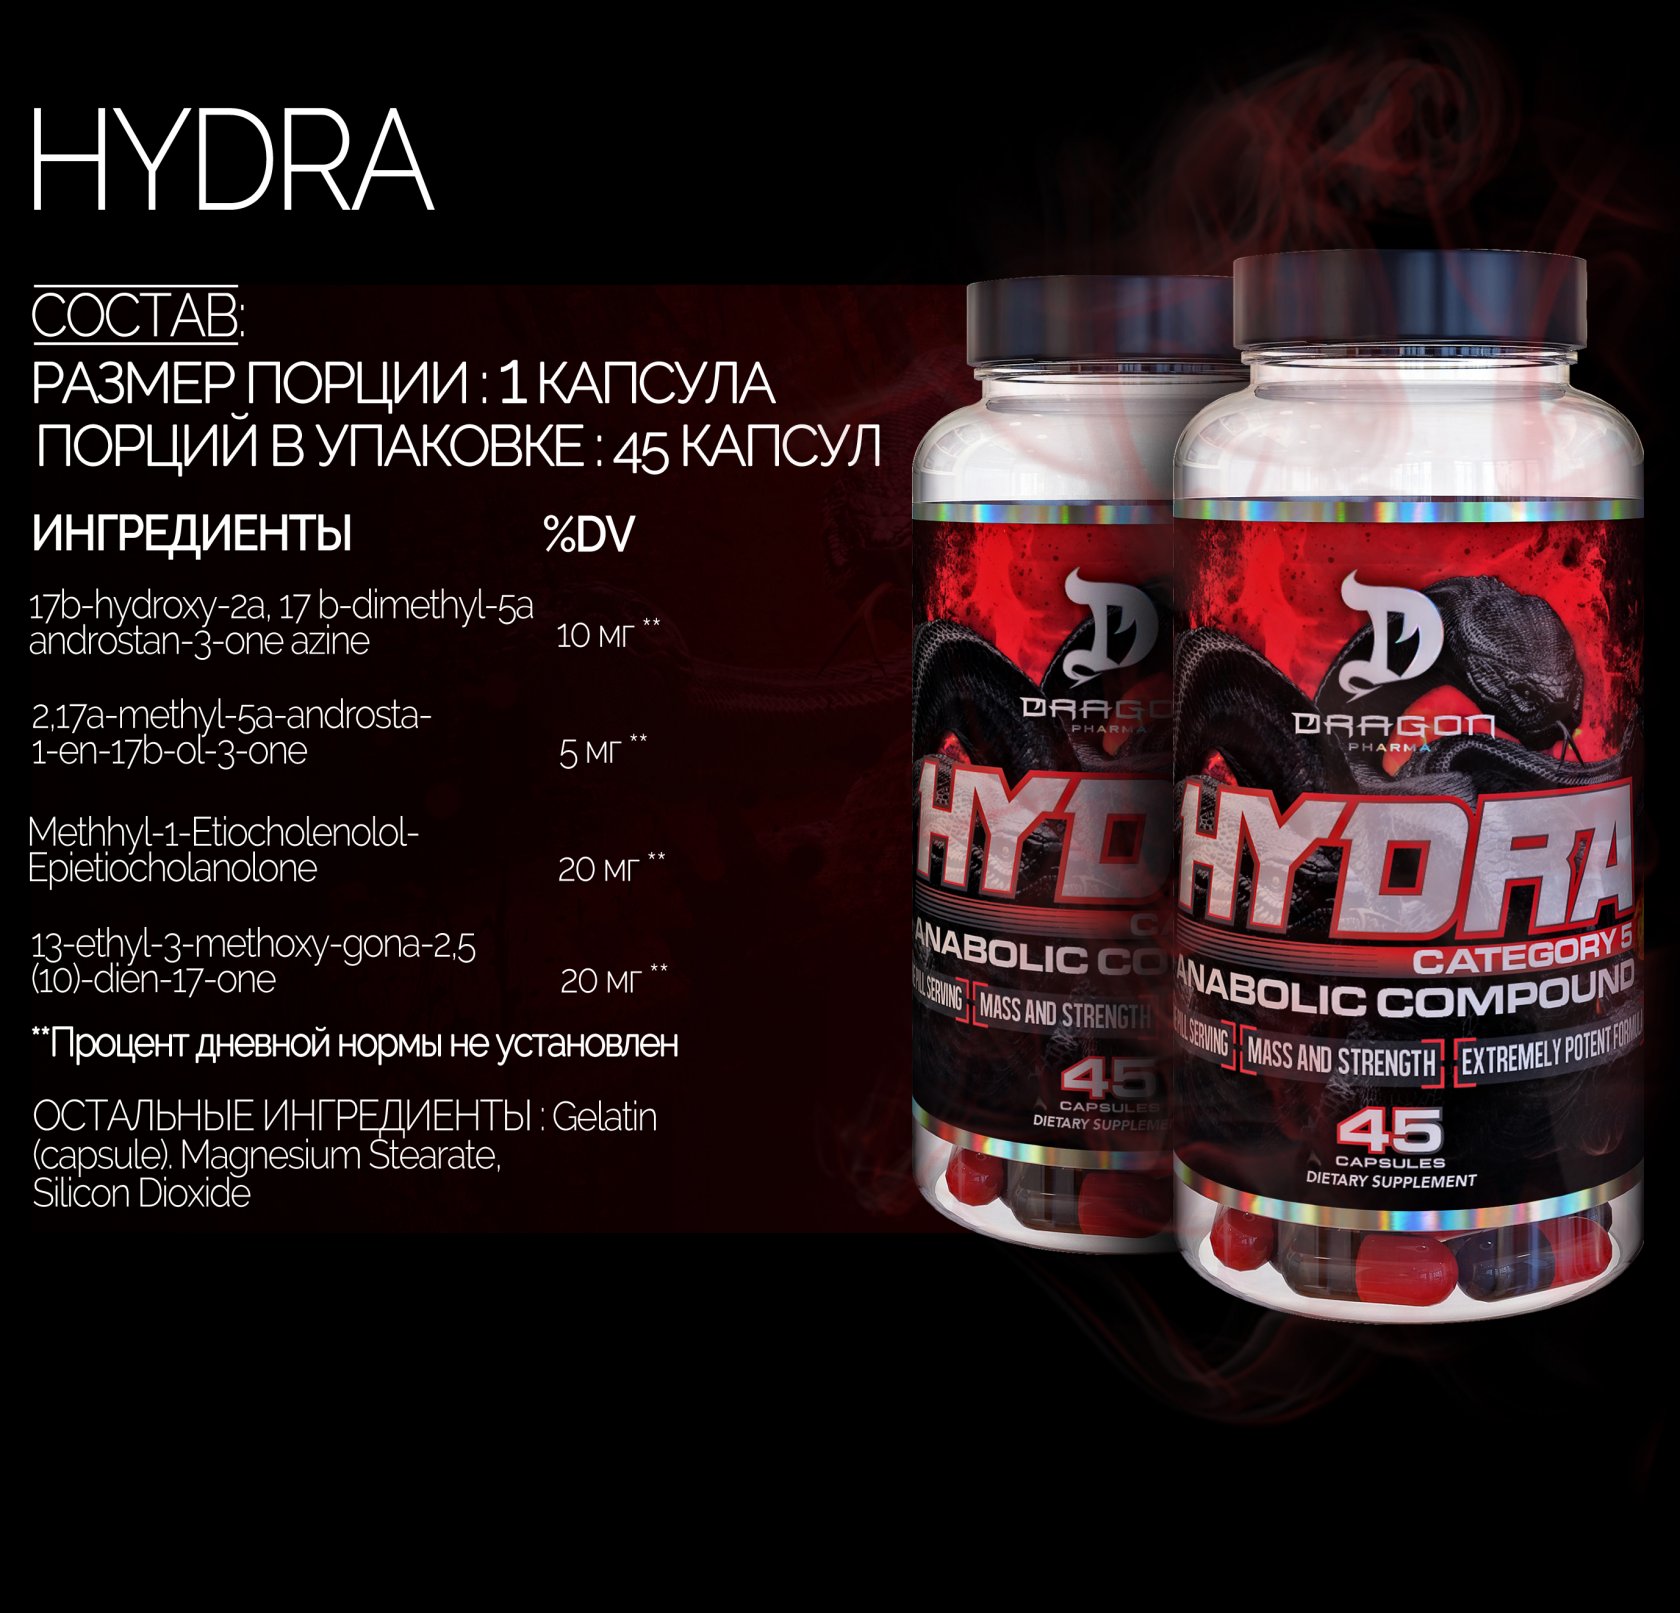 Hydra dragon pharma побочные действия